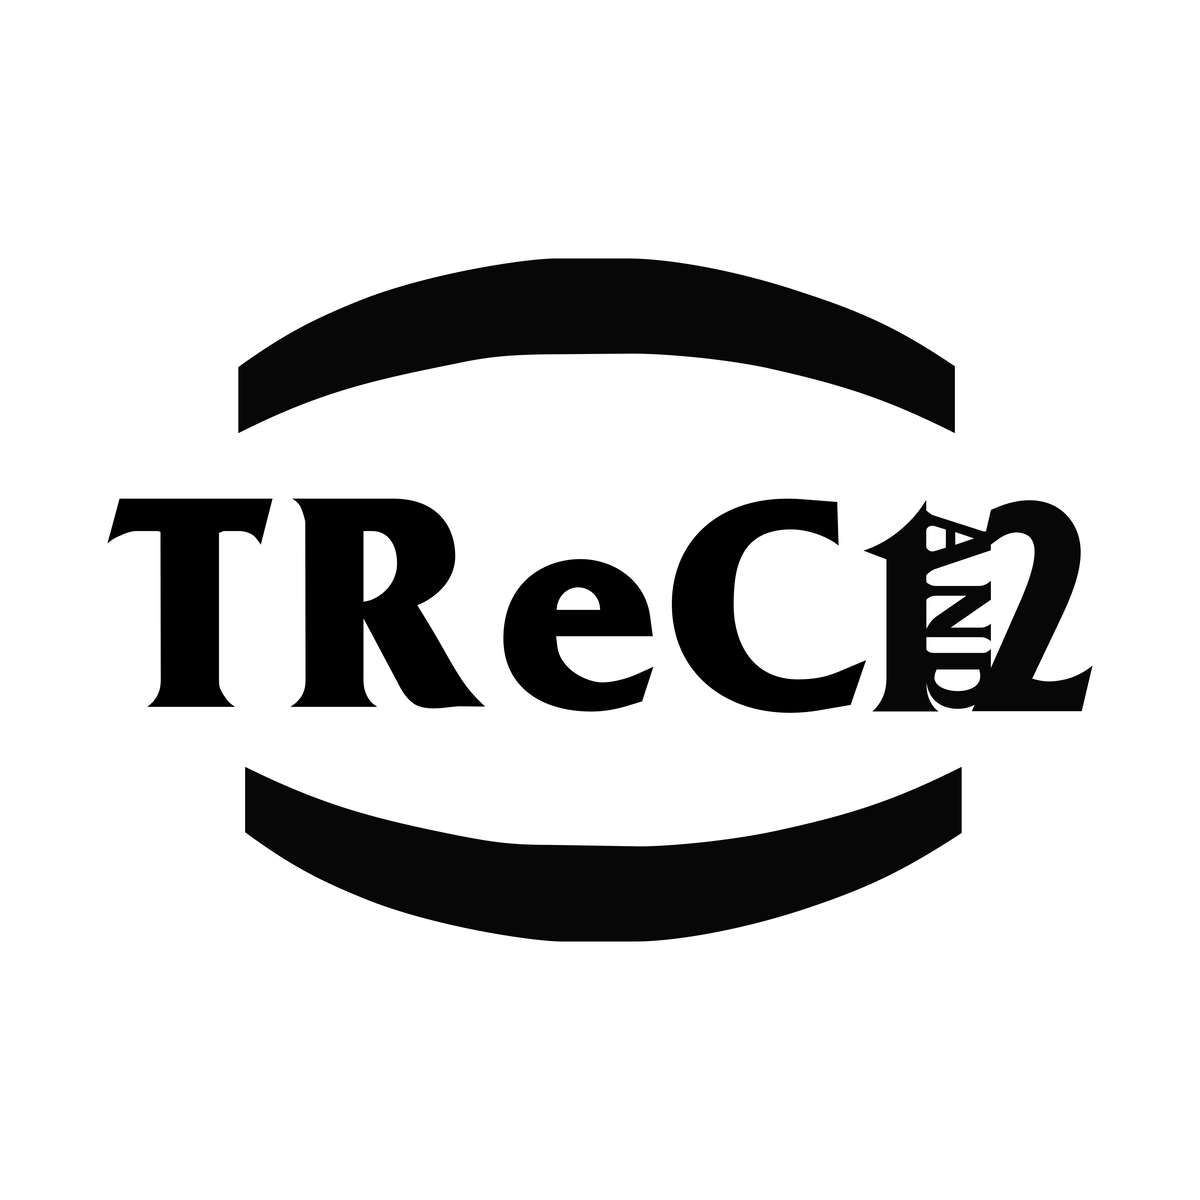 Trec1and2